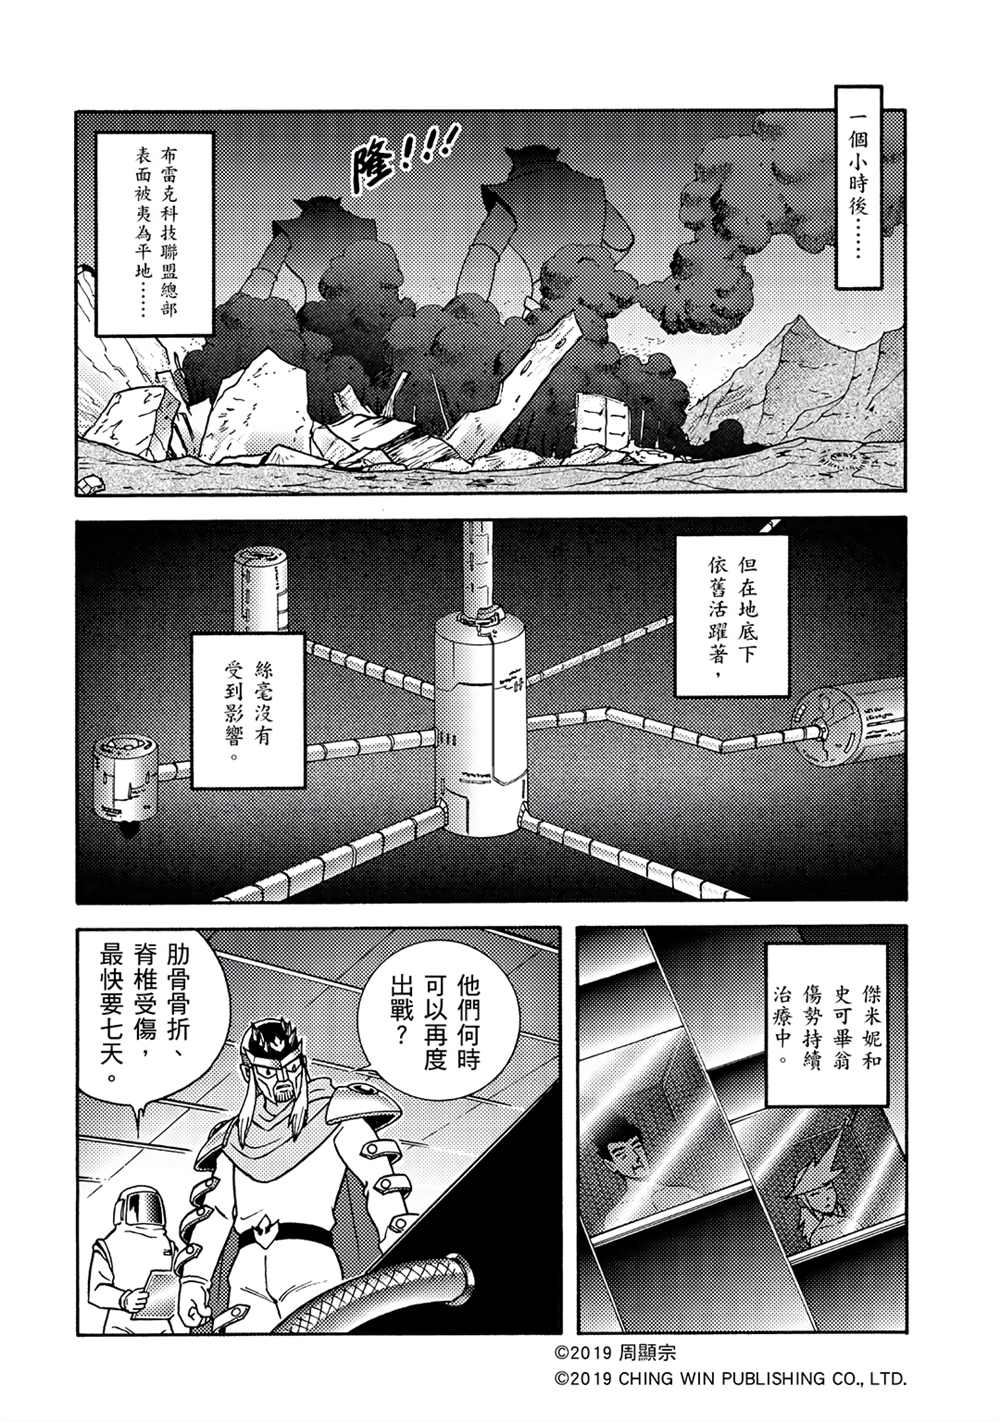 折纸战士A漫画,第4回红色天龙重生3图